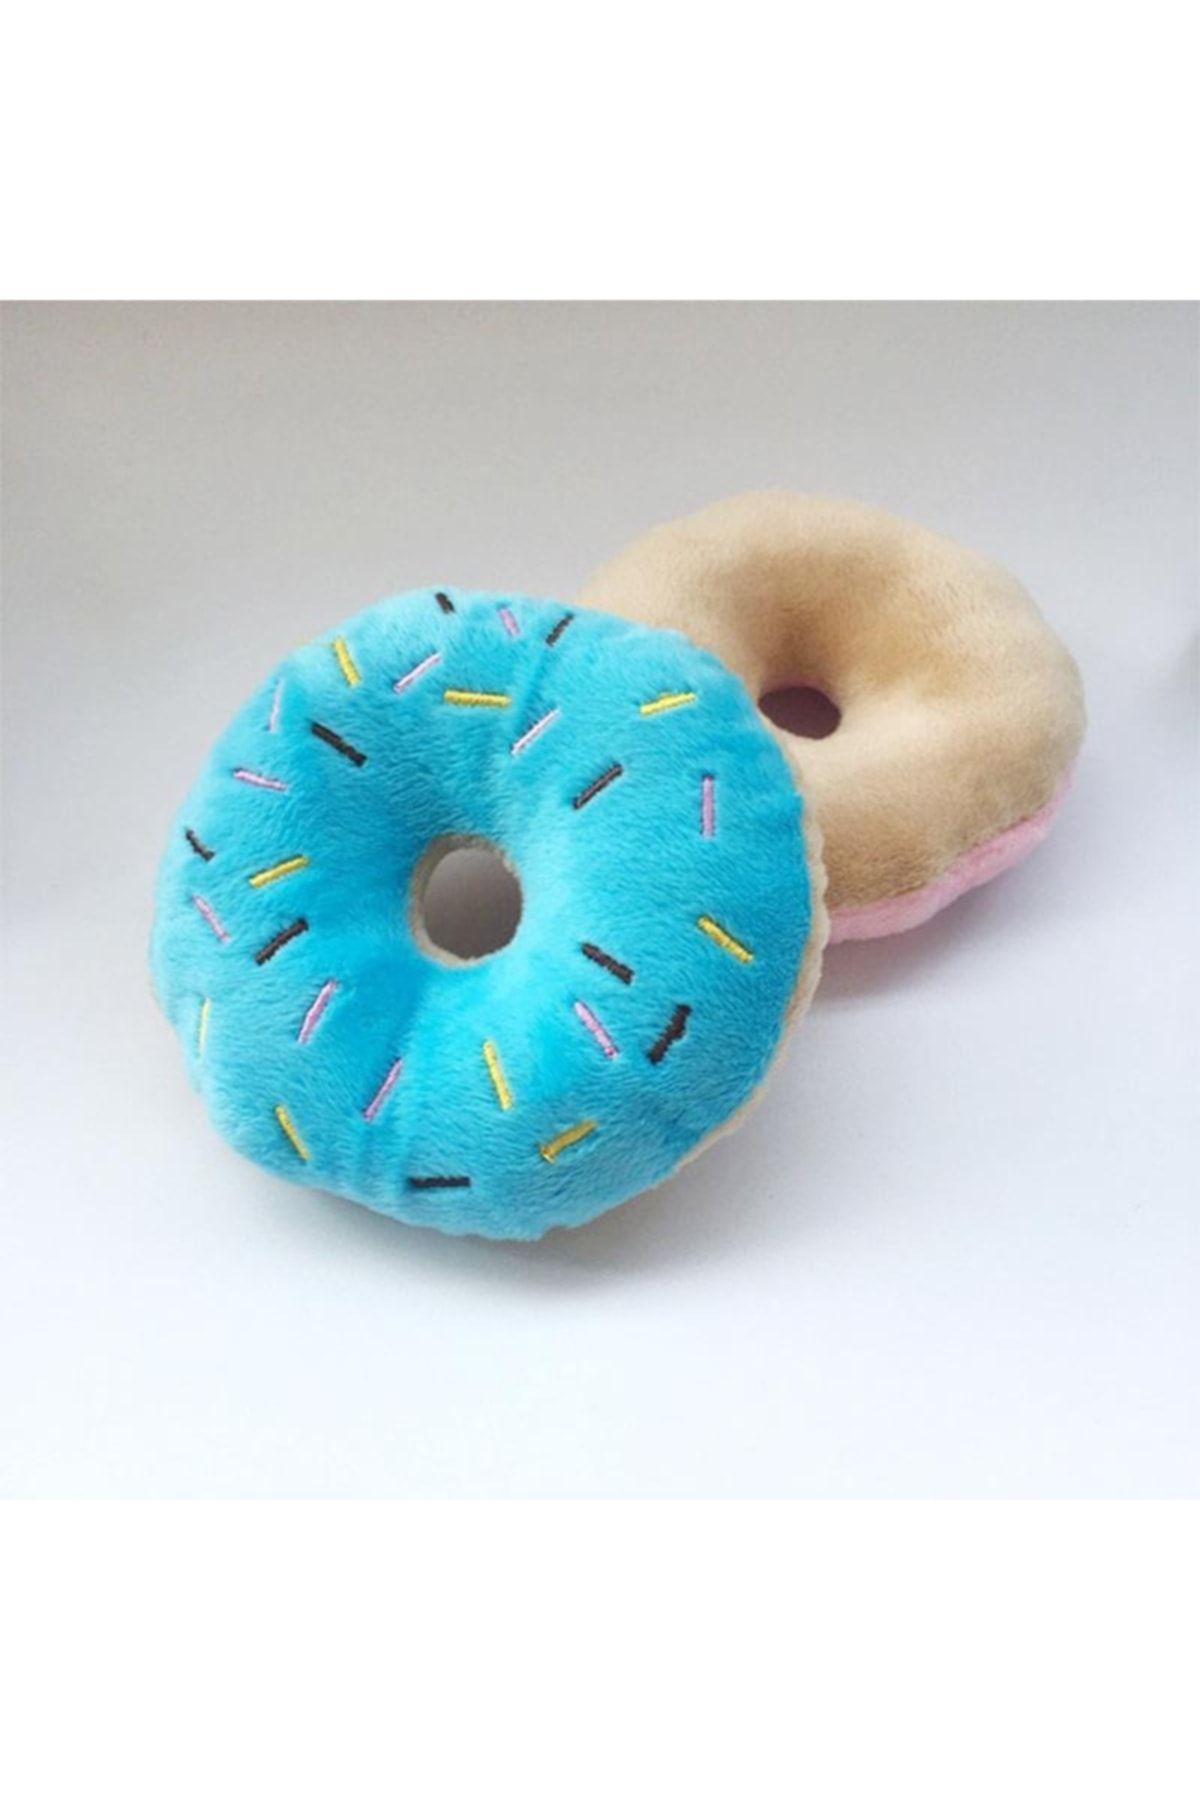 Mixpet Donut Şekilli Köpek Peluş Oyuncak 11 Cm 1 Adet Mavi